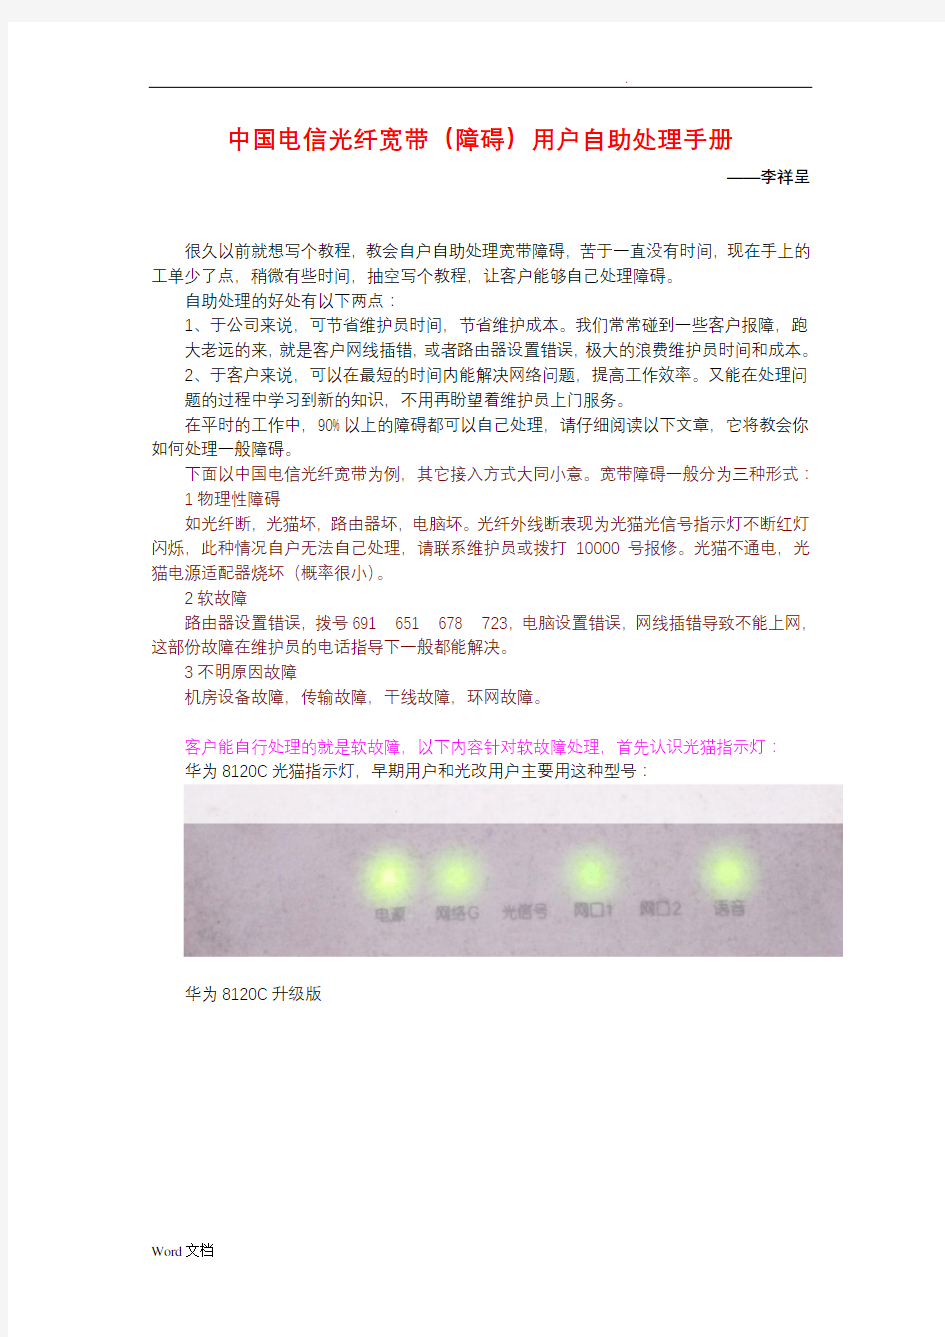 中国电信光纤宽带(障碍)用户自助处理手册李祥呈